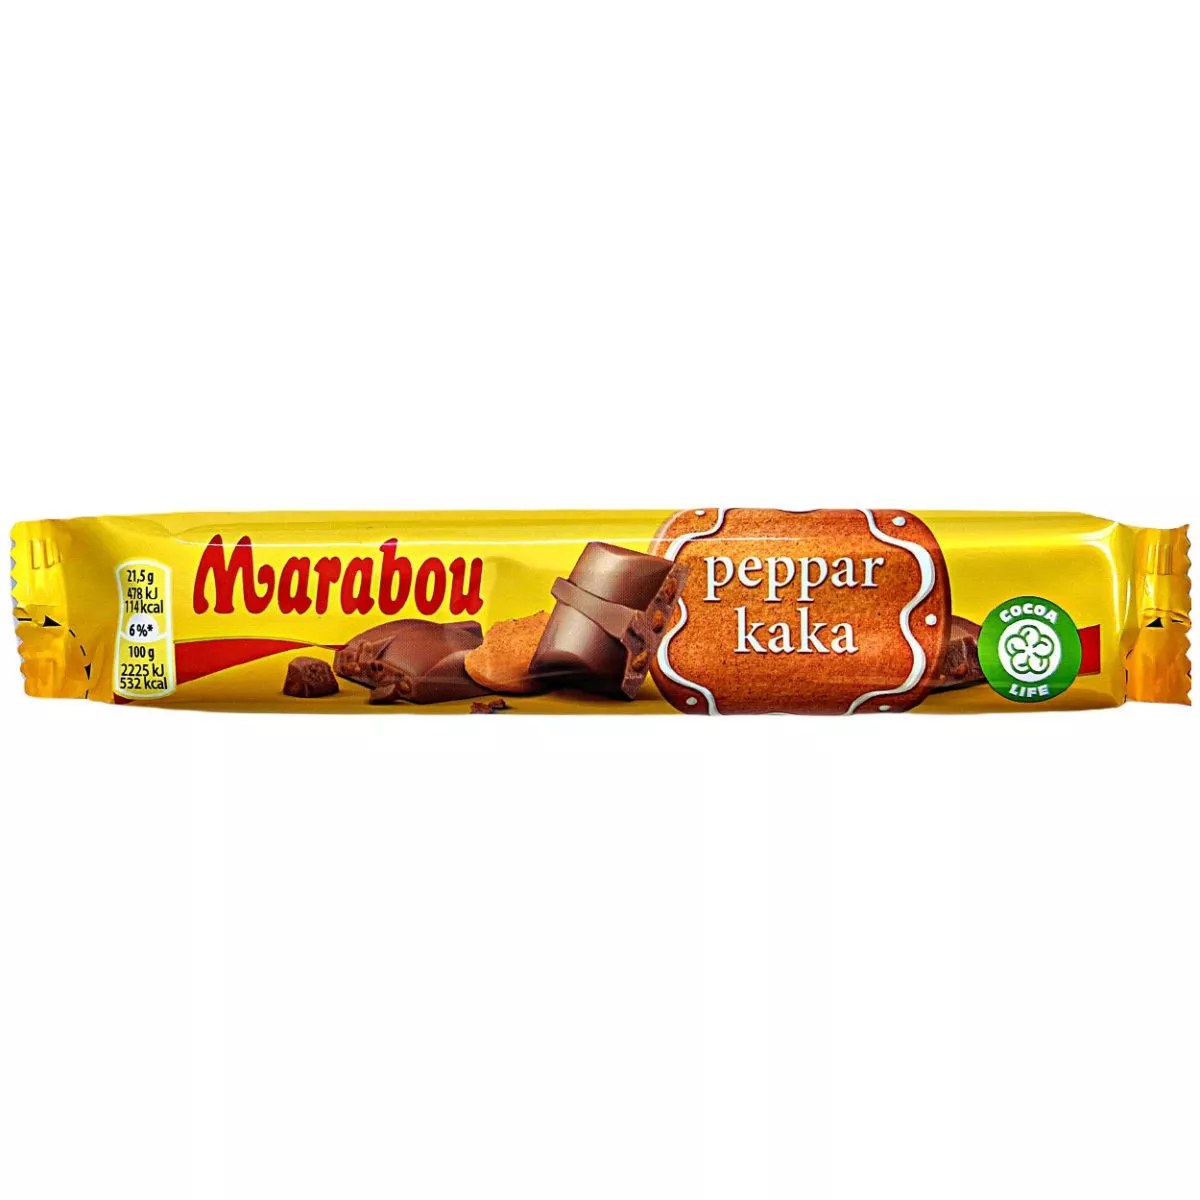 Marabou pepparkaka - Riegel (43 g) 1